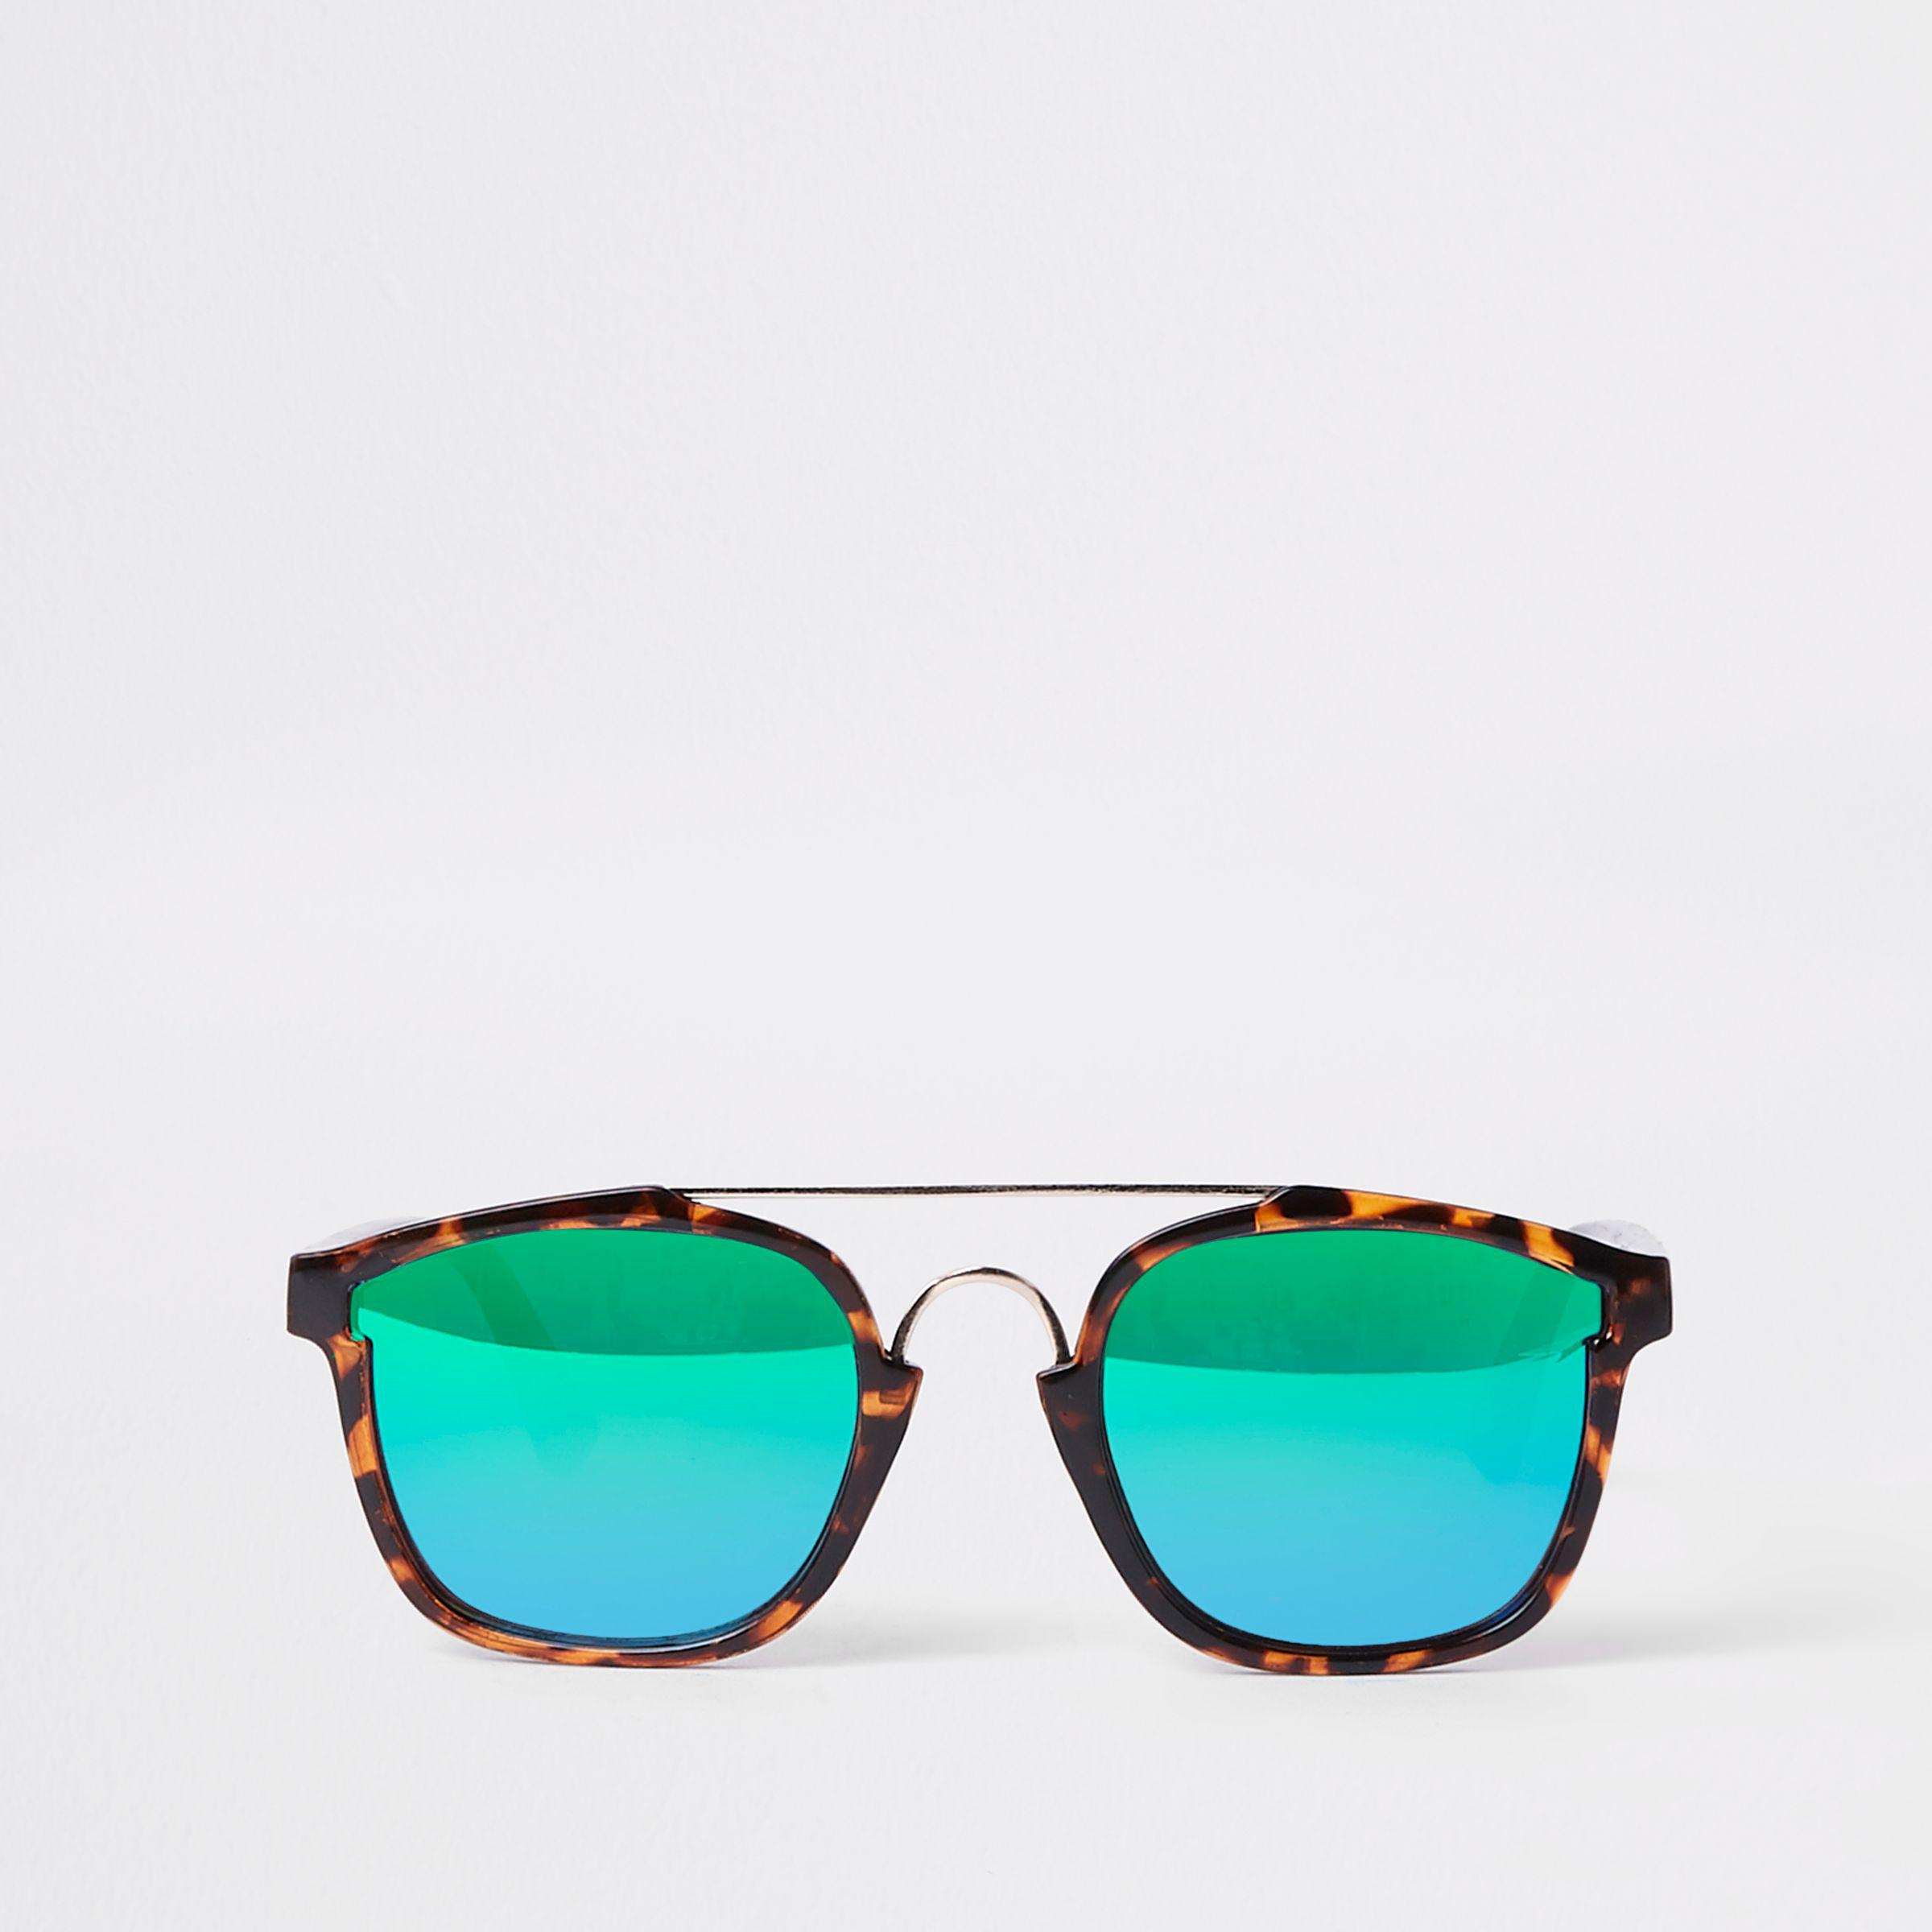 River Island Brown Tortoiseshell Revo Lens Sunglasses For Men Lyst